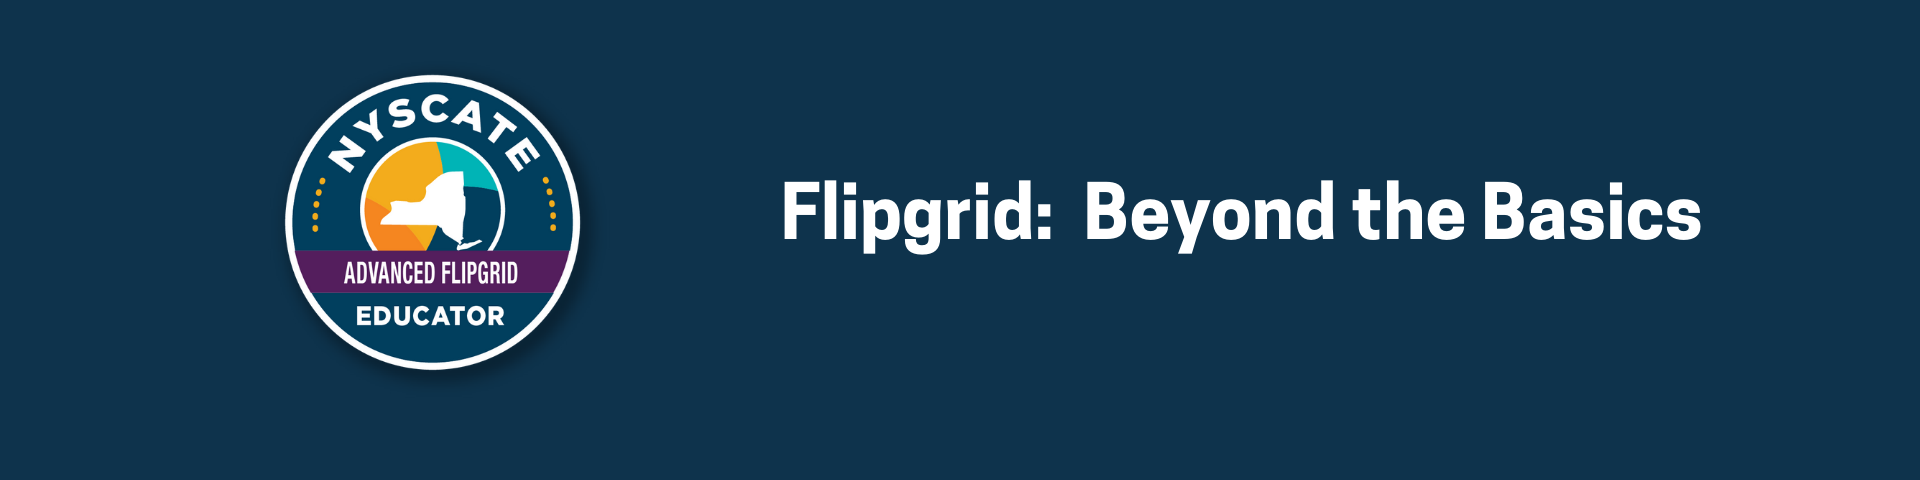 advanced flipgrid